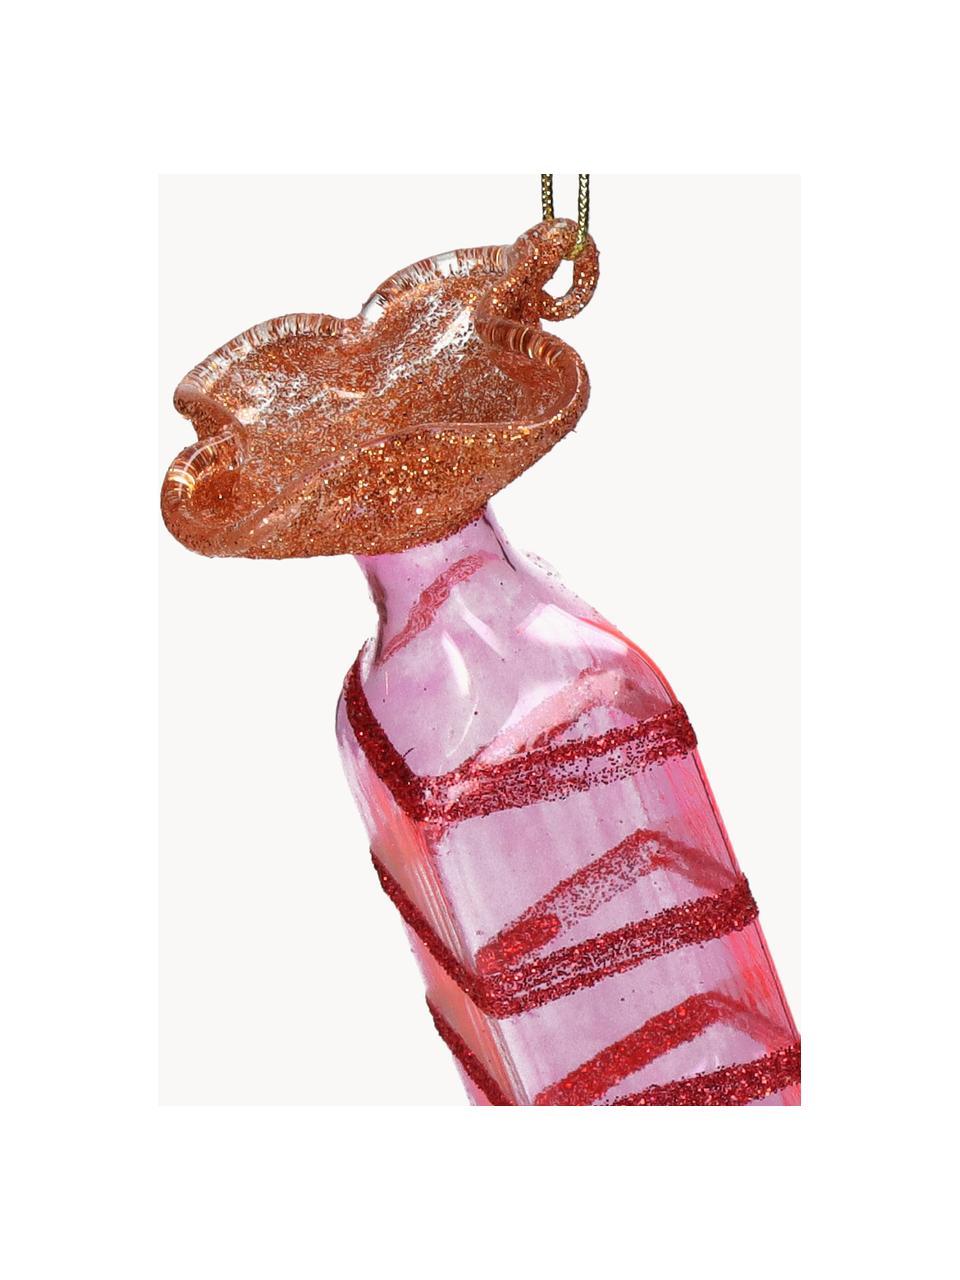 Adorno navideño caramelo Candy, Vidrio, Rojo, rosa, transparente, An 4 x Al 10 cm